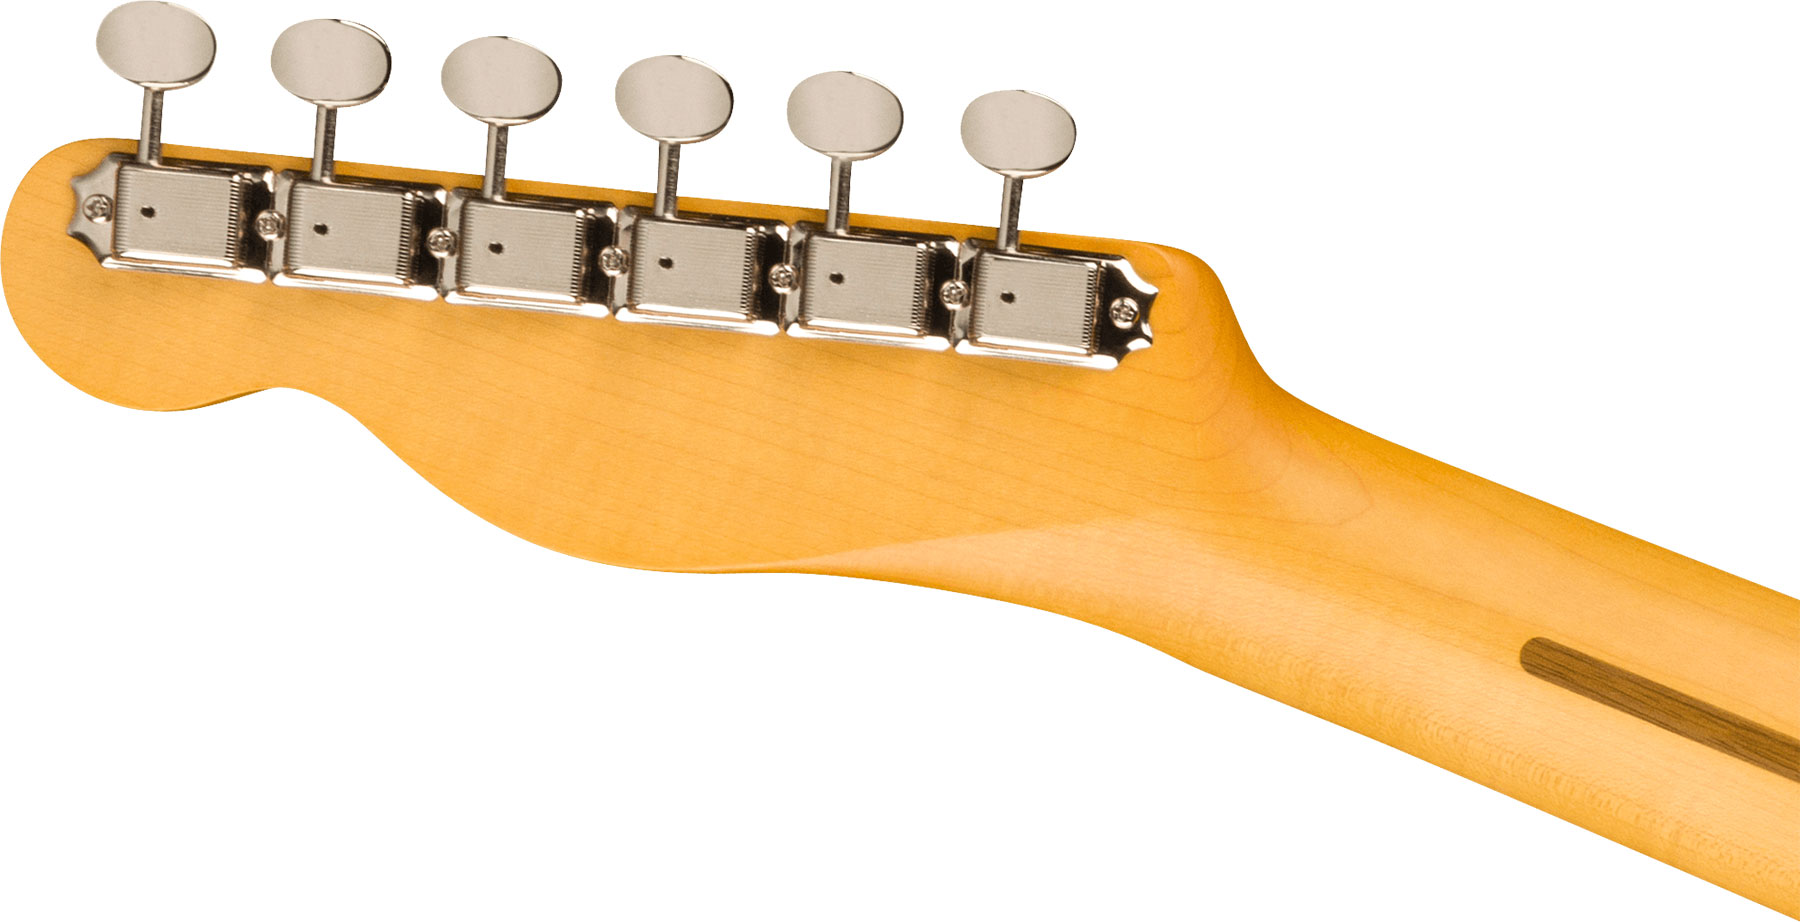 Fender Tele Custom '60s Jv Modified Jap 2s Ht Rw - Firemist Gold - E-Gitarre in Teleform - Variation 3